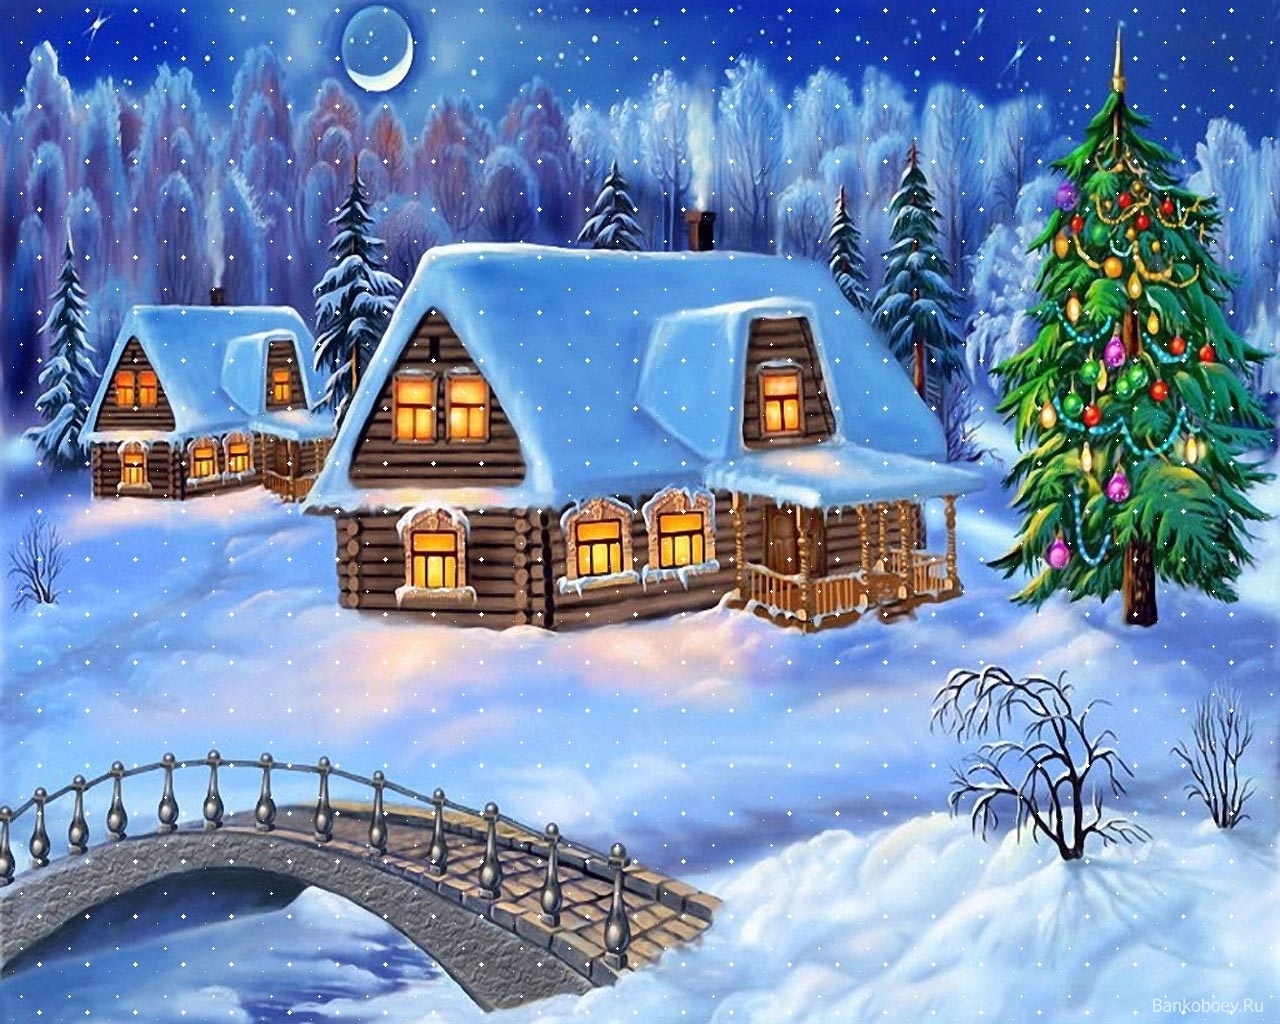 pictures, winter, bridges, landscape, houses, night, snow, blue